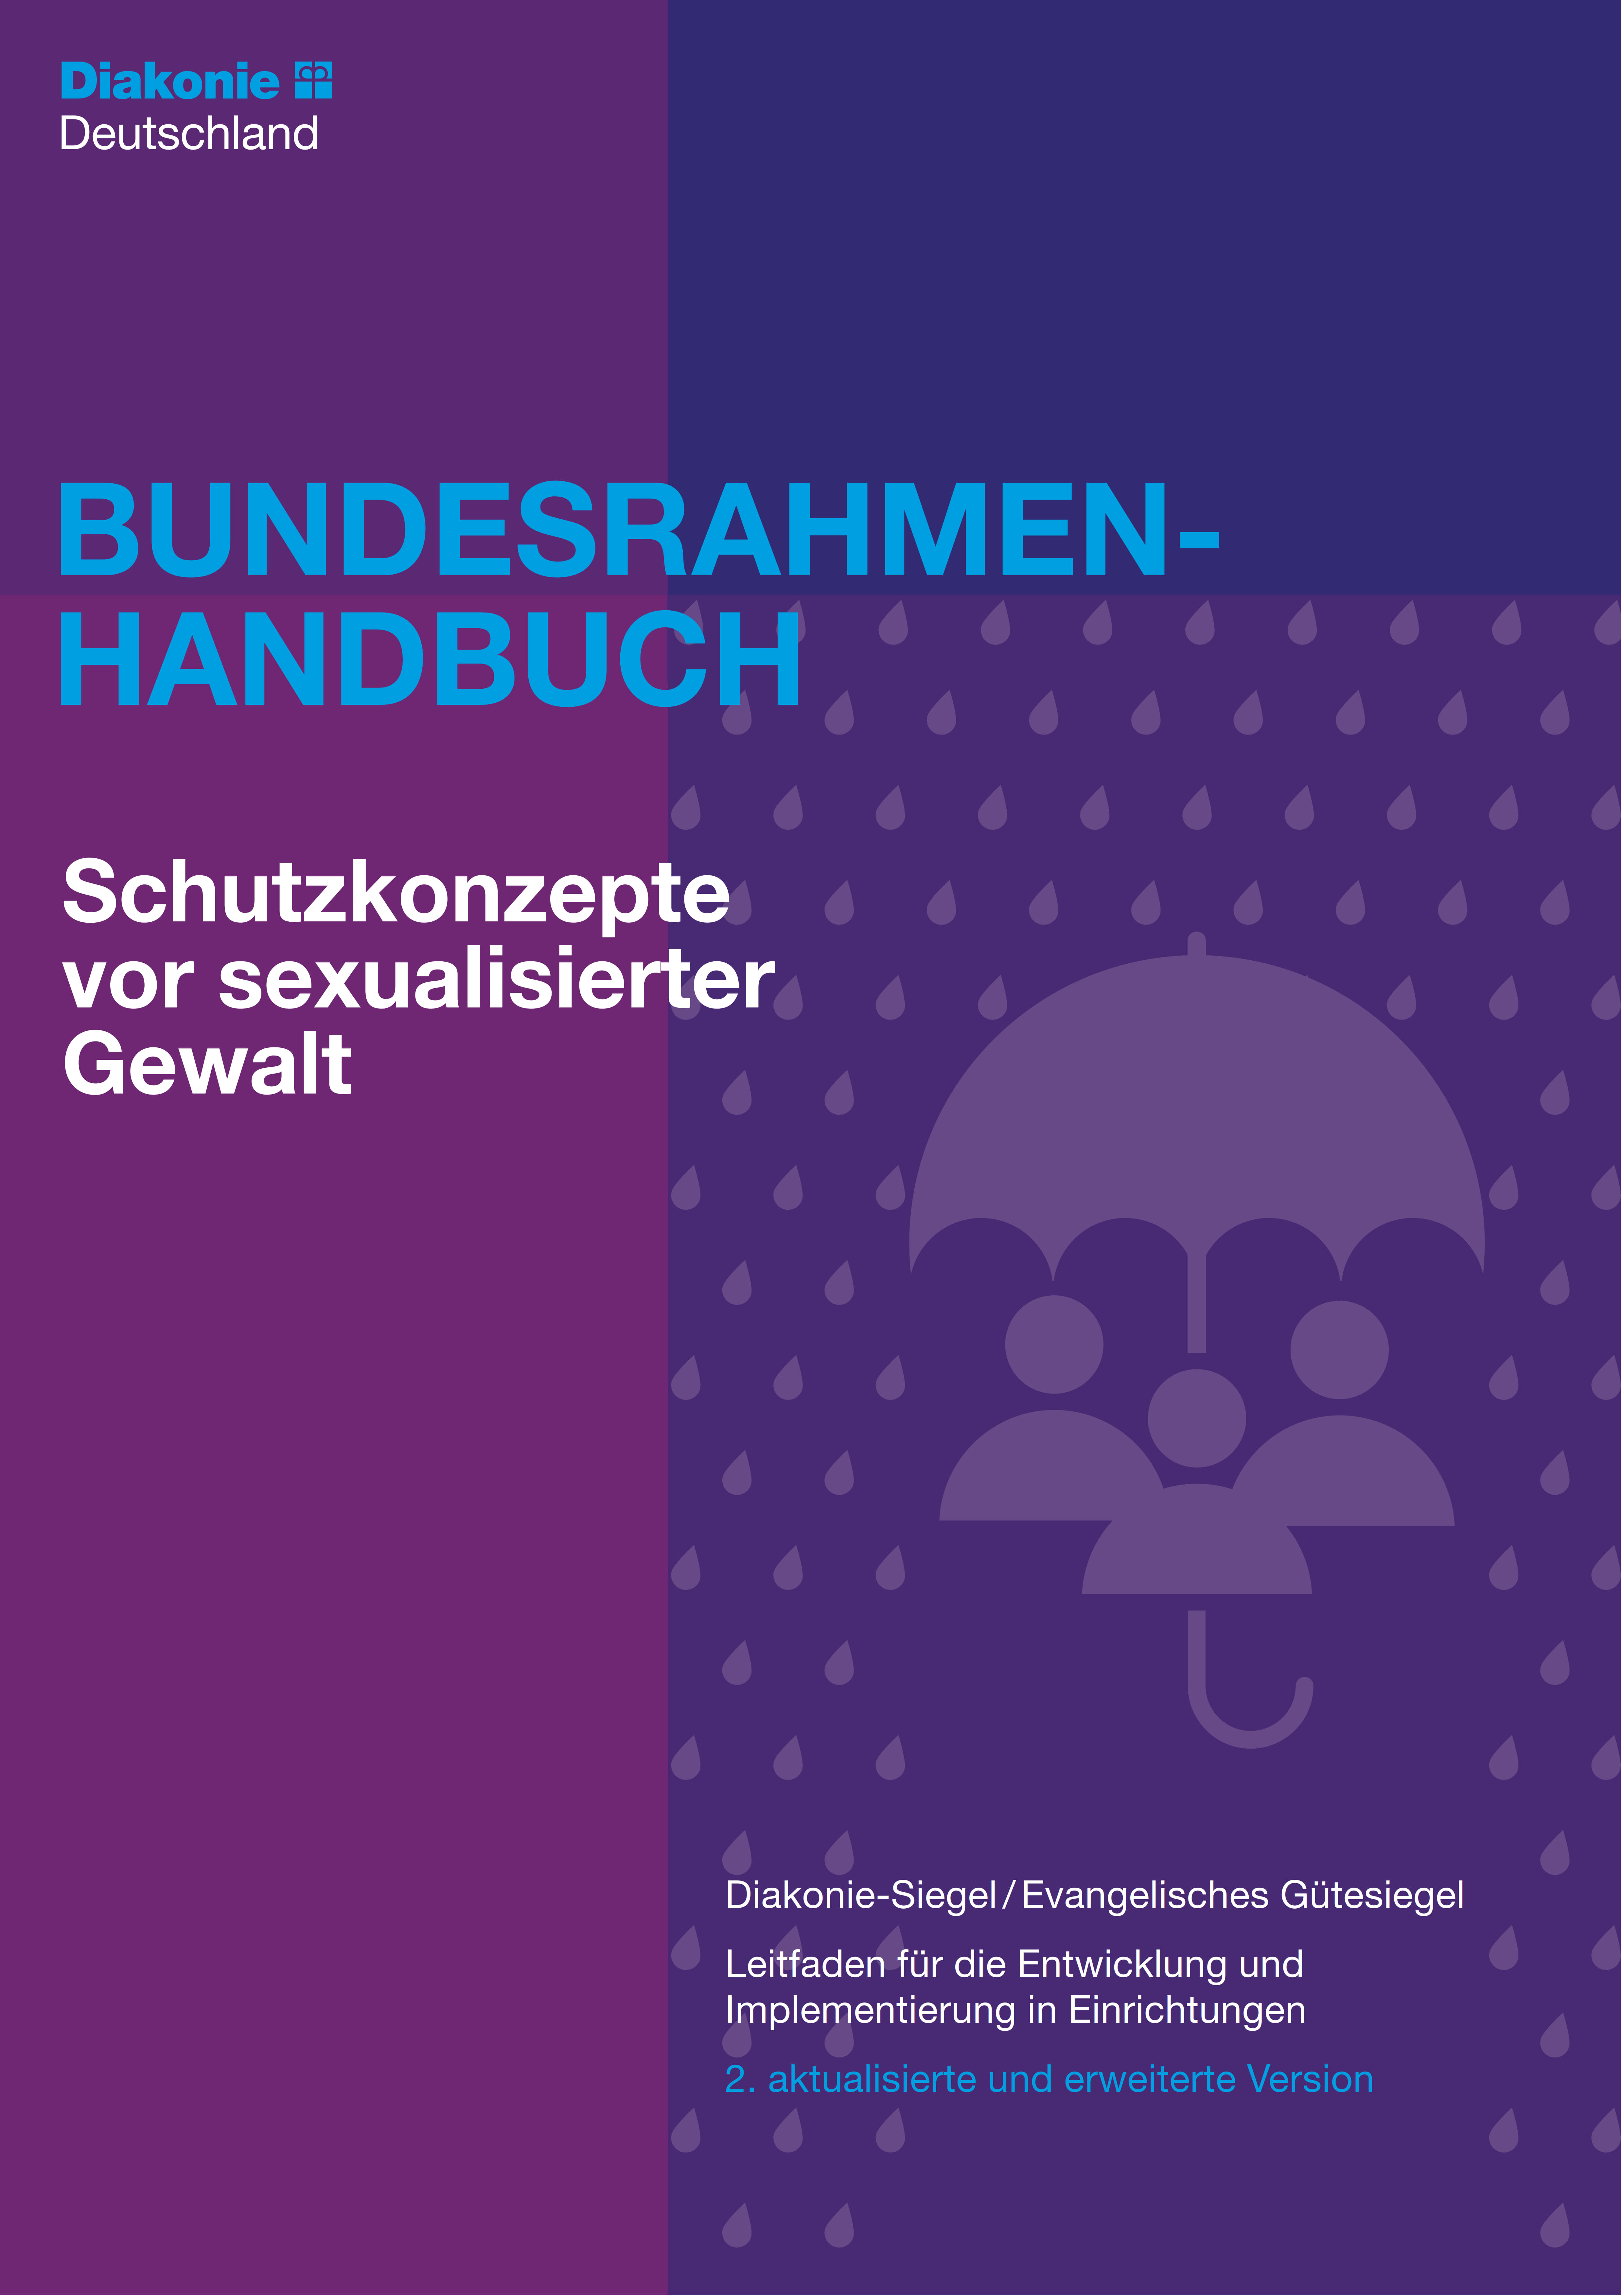 Schutzkonzepte vor sexualisierter Gewalt 2. Version - Bundesrahmenhandbuch Diakonie-Siegel